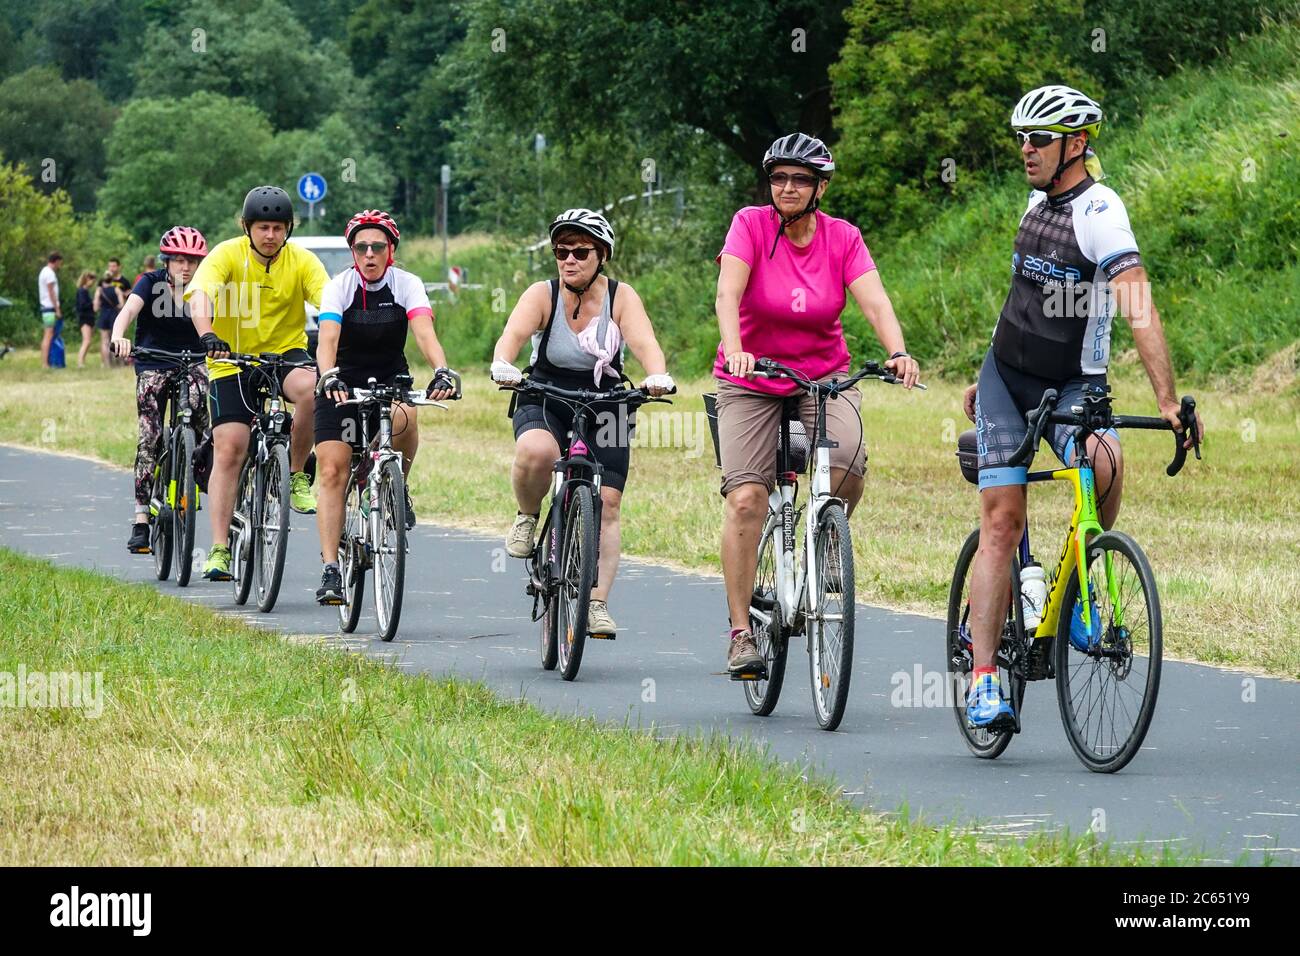 Groupe de personnes vacances à vélo Allemagne Saxe Allemagne, Europe personnes faisant du vélo sur piste cyclable piste cyclable vélo, piste cyclable cyclistes Allemagne Banque D'Images